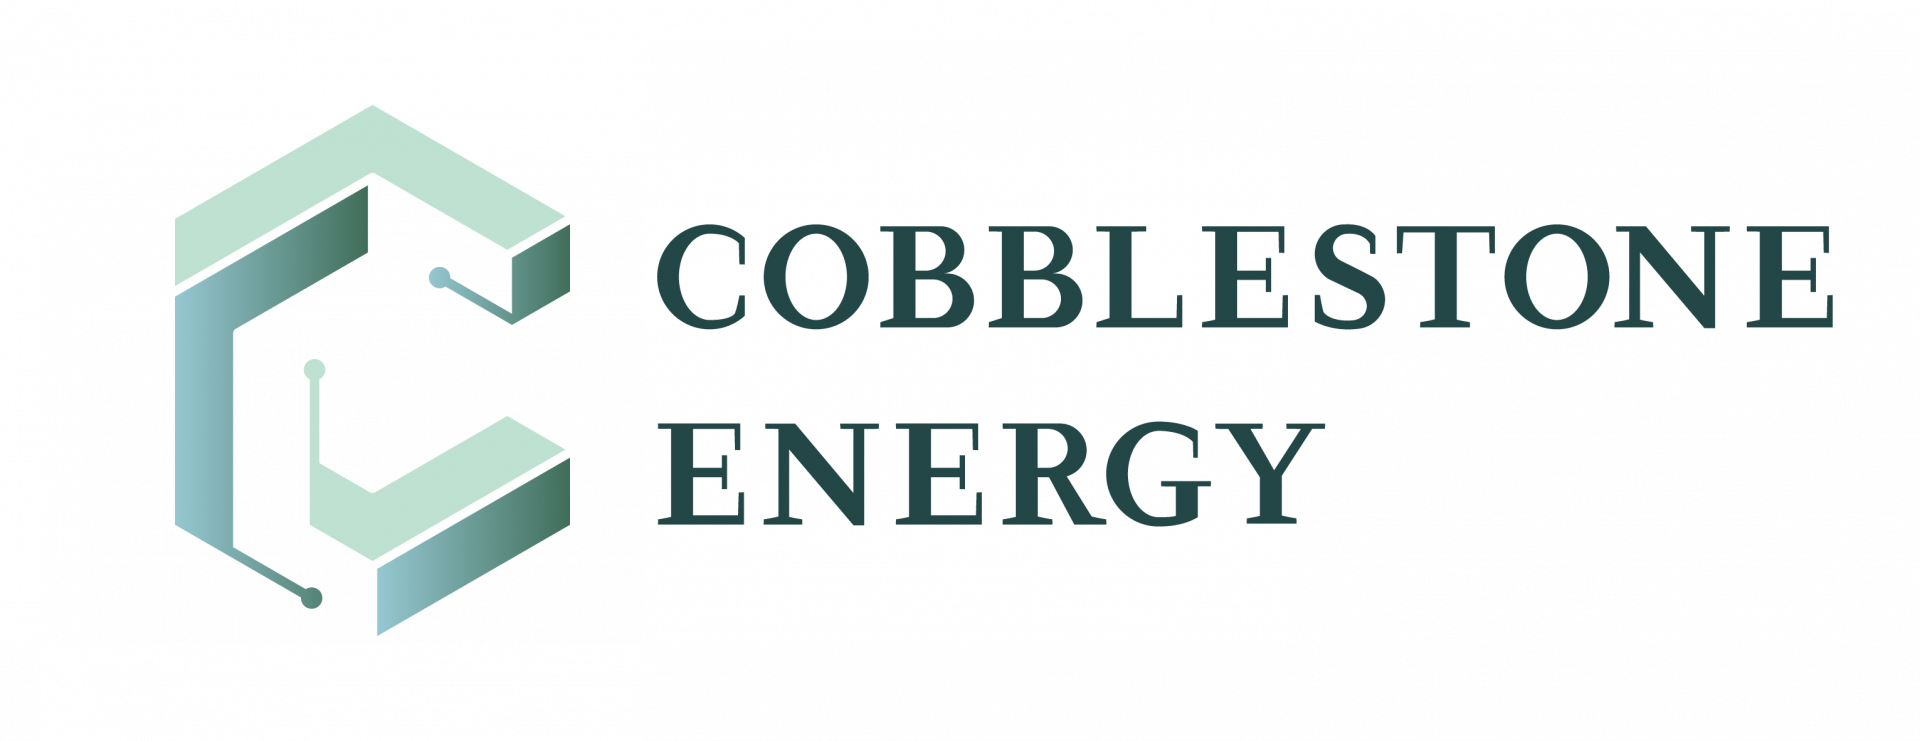 Cobblestone Logo